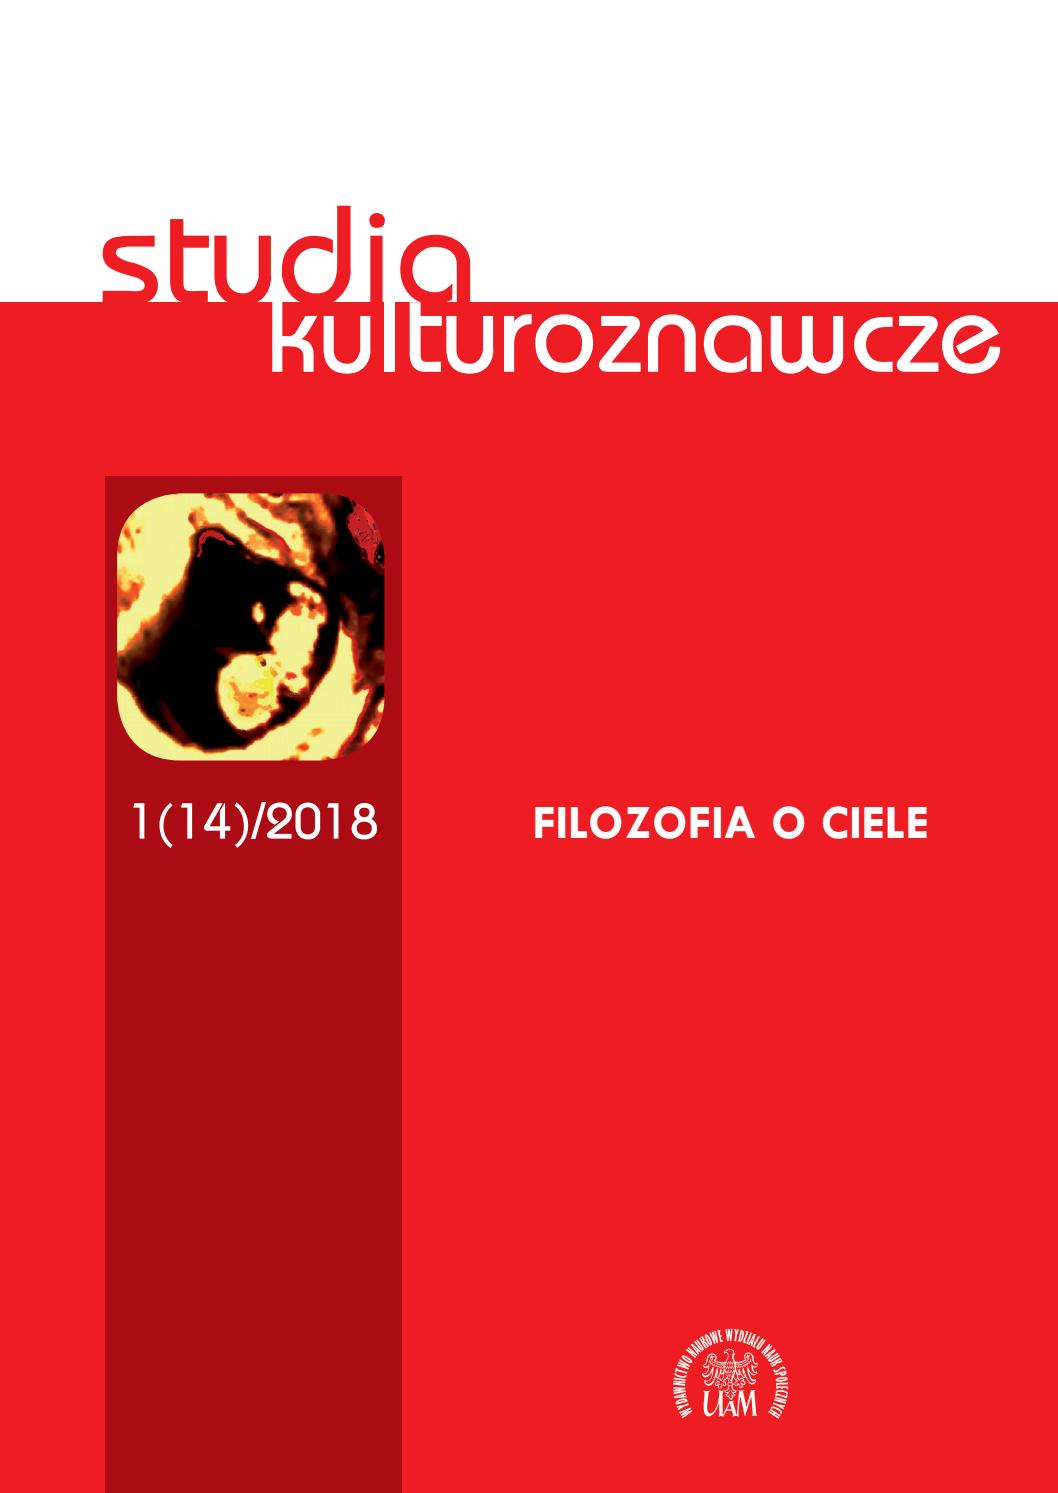 Studia Kulturoznawcze 1(14)/2018 - Filozofia o ciele - Kulturoznawstwo UAM